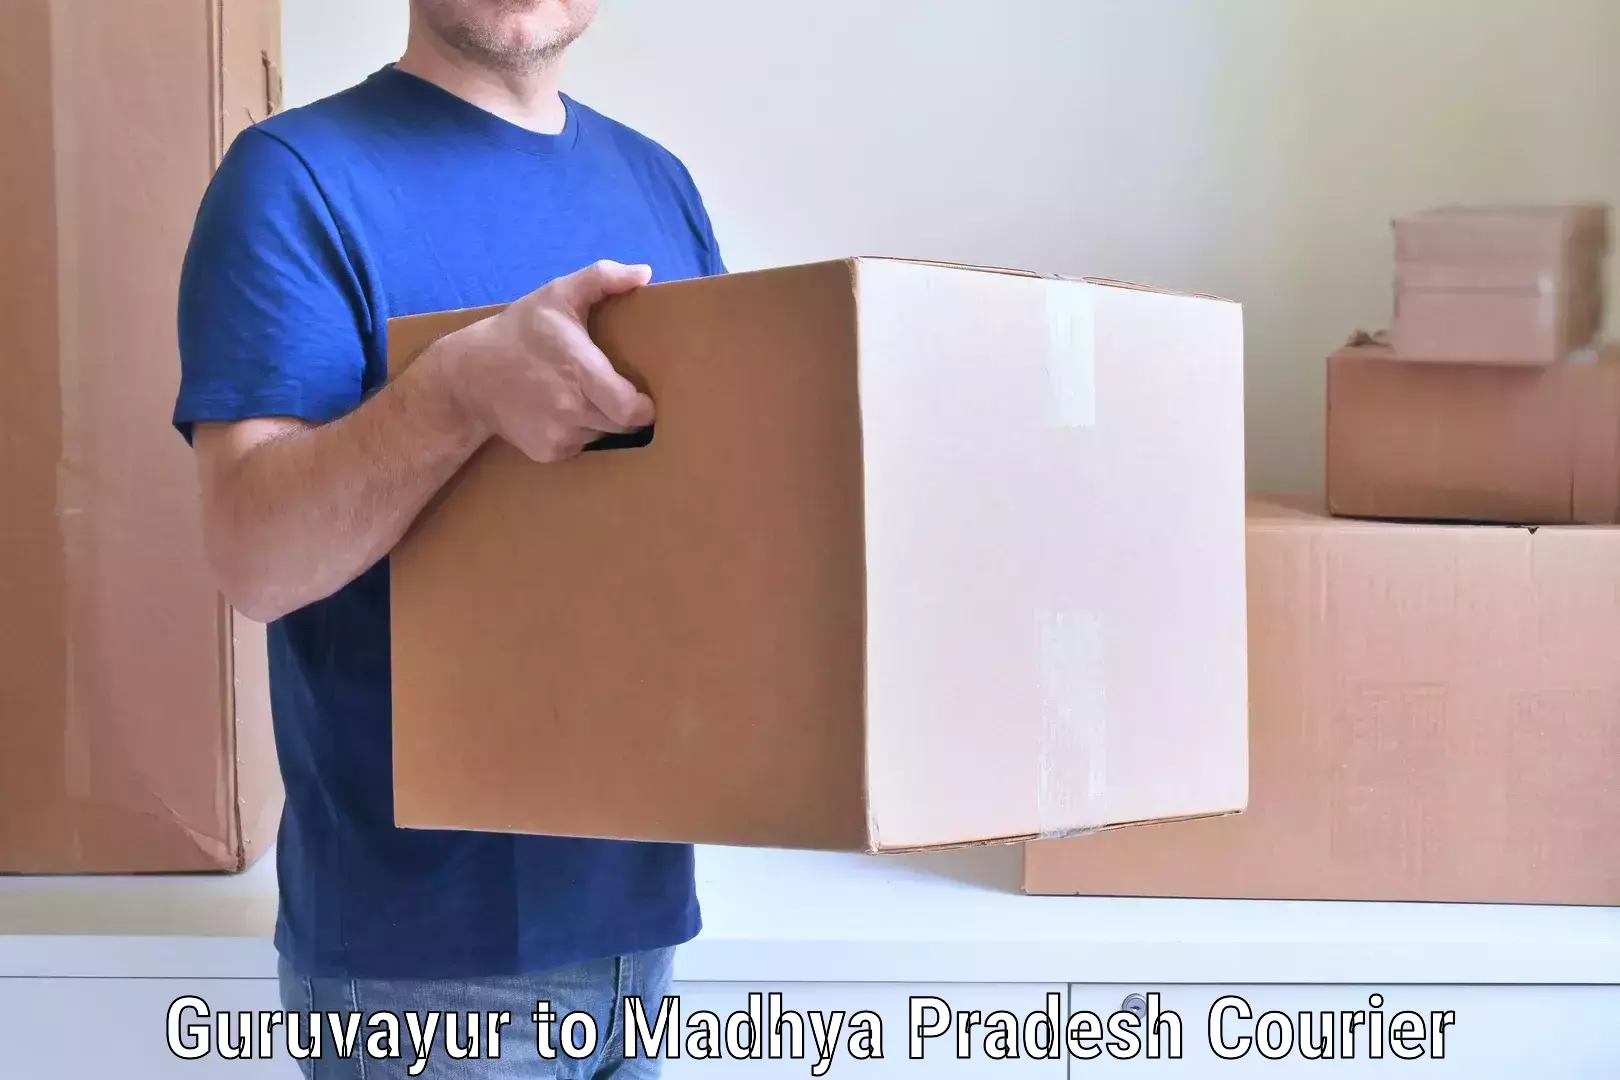 Professional movers and packers Guruvayur to Bareli